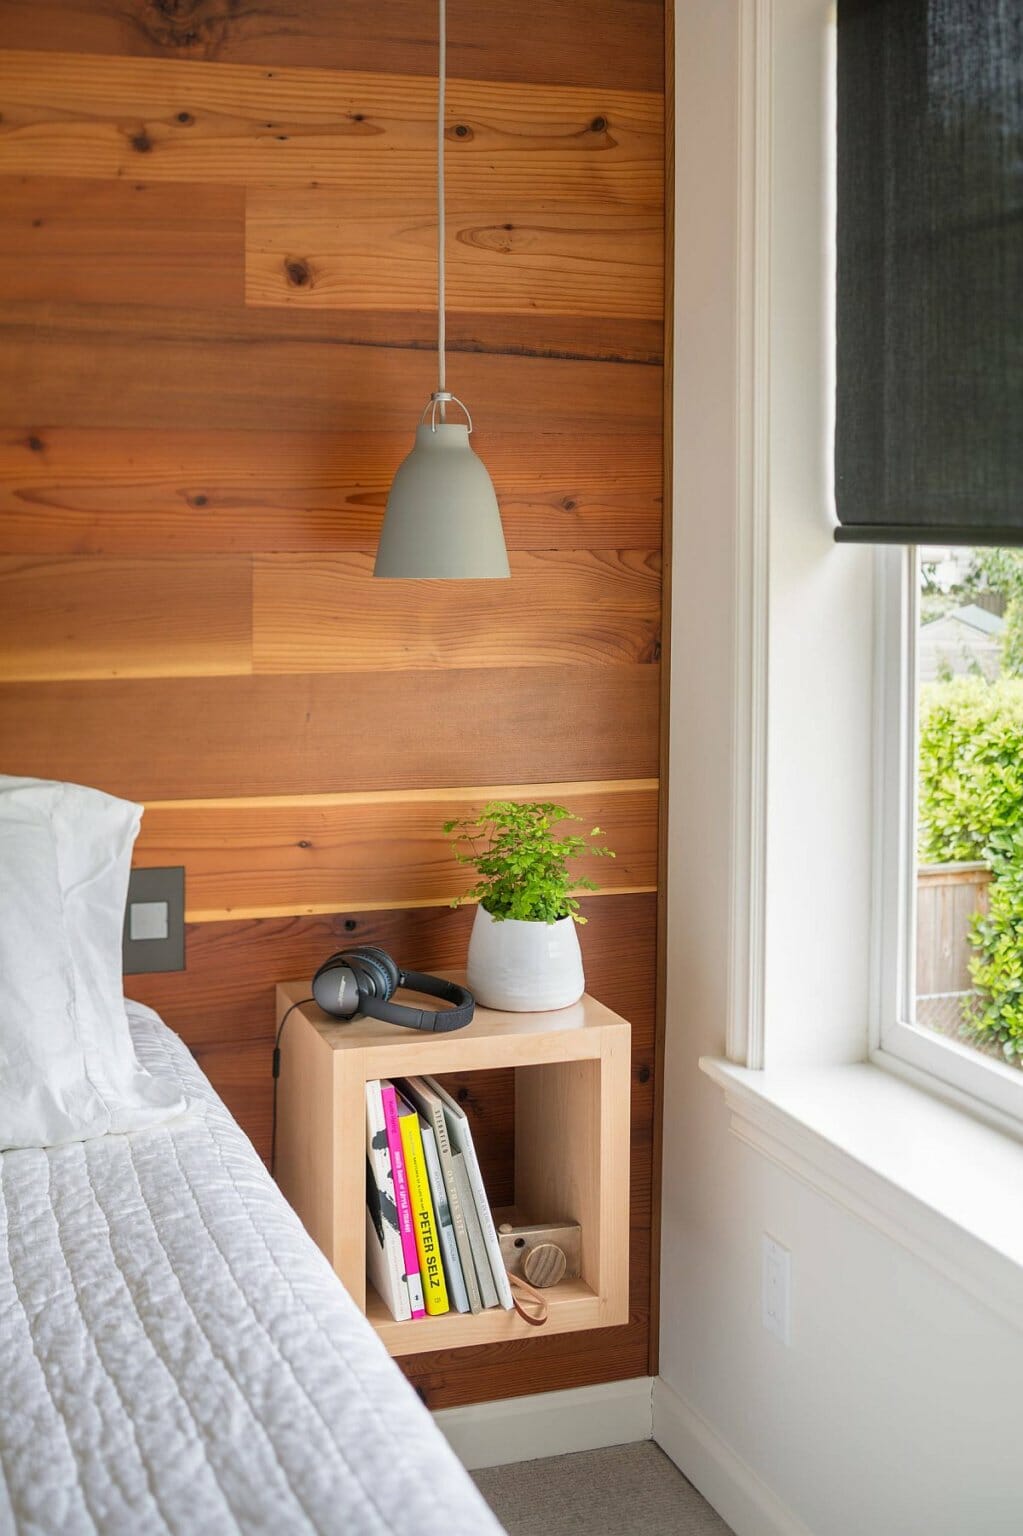 hình ảnh góc phòng ngủ hiện đại với đèn thả màu xám trắng, tường ốp gỗ, kệ sách nhỏ, chậu cây xinh xắn